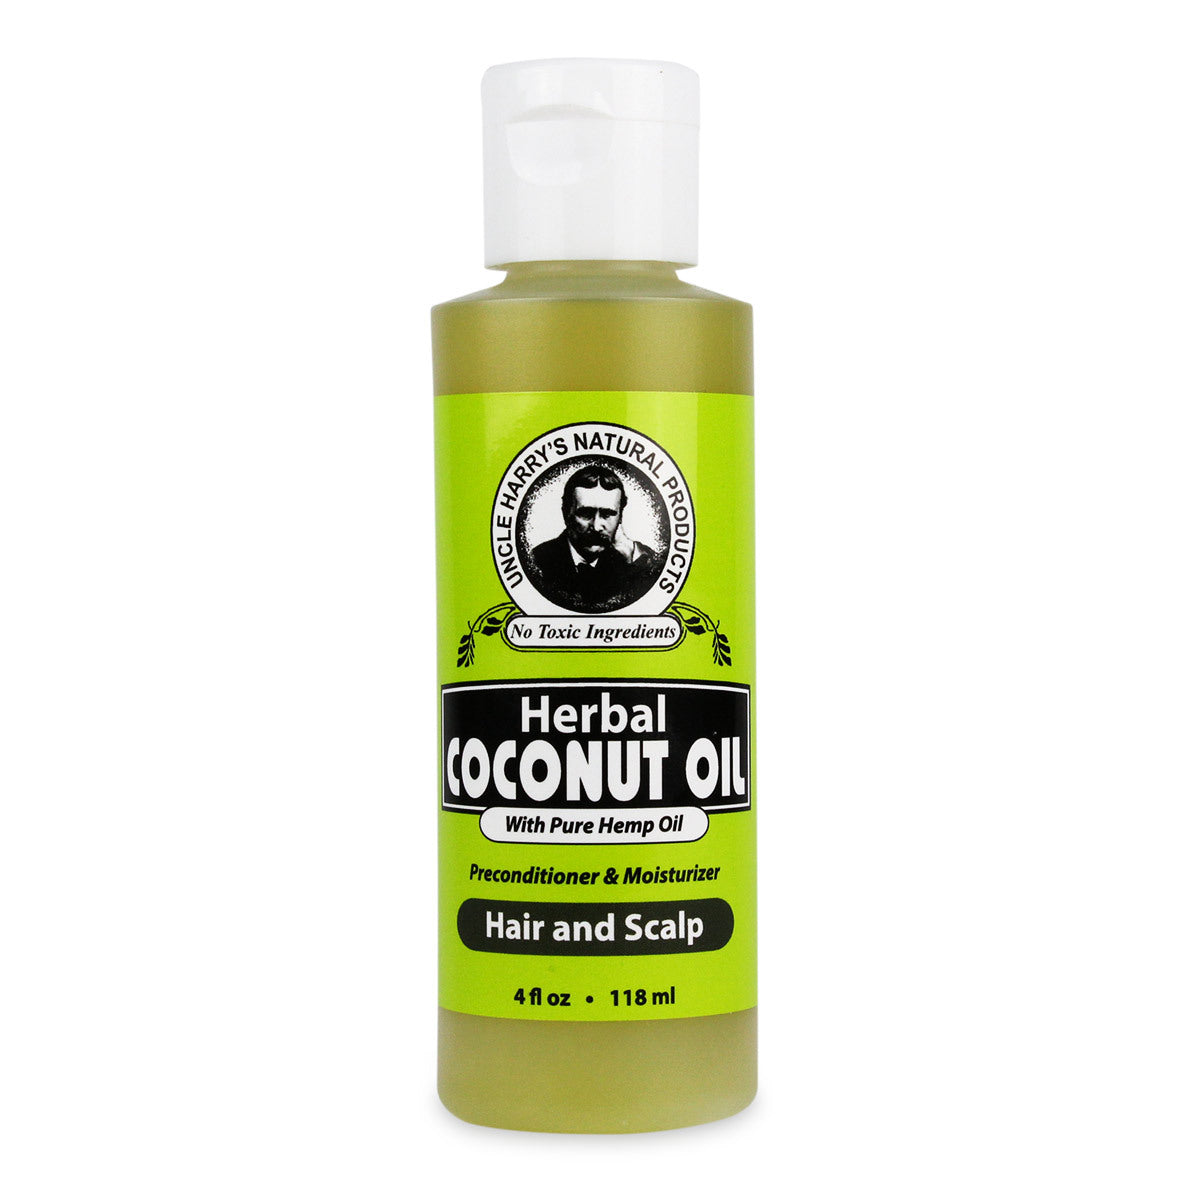 Alternate Image of Herbal Coconut Oil for Hair & Scalp